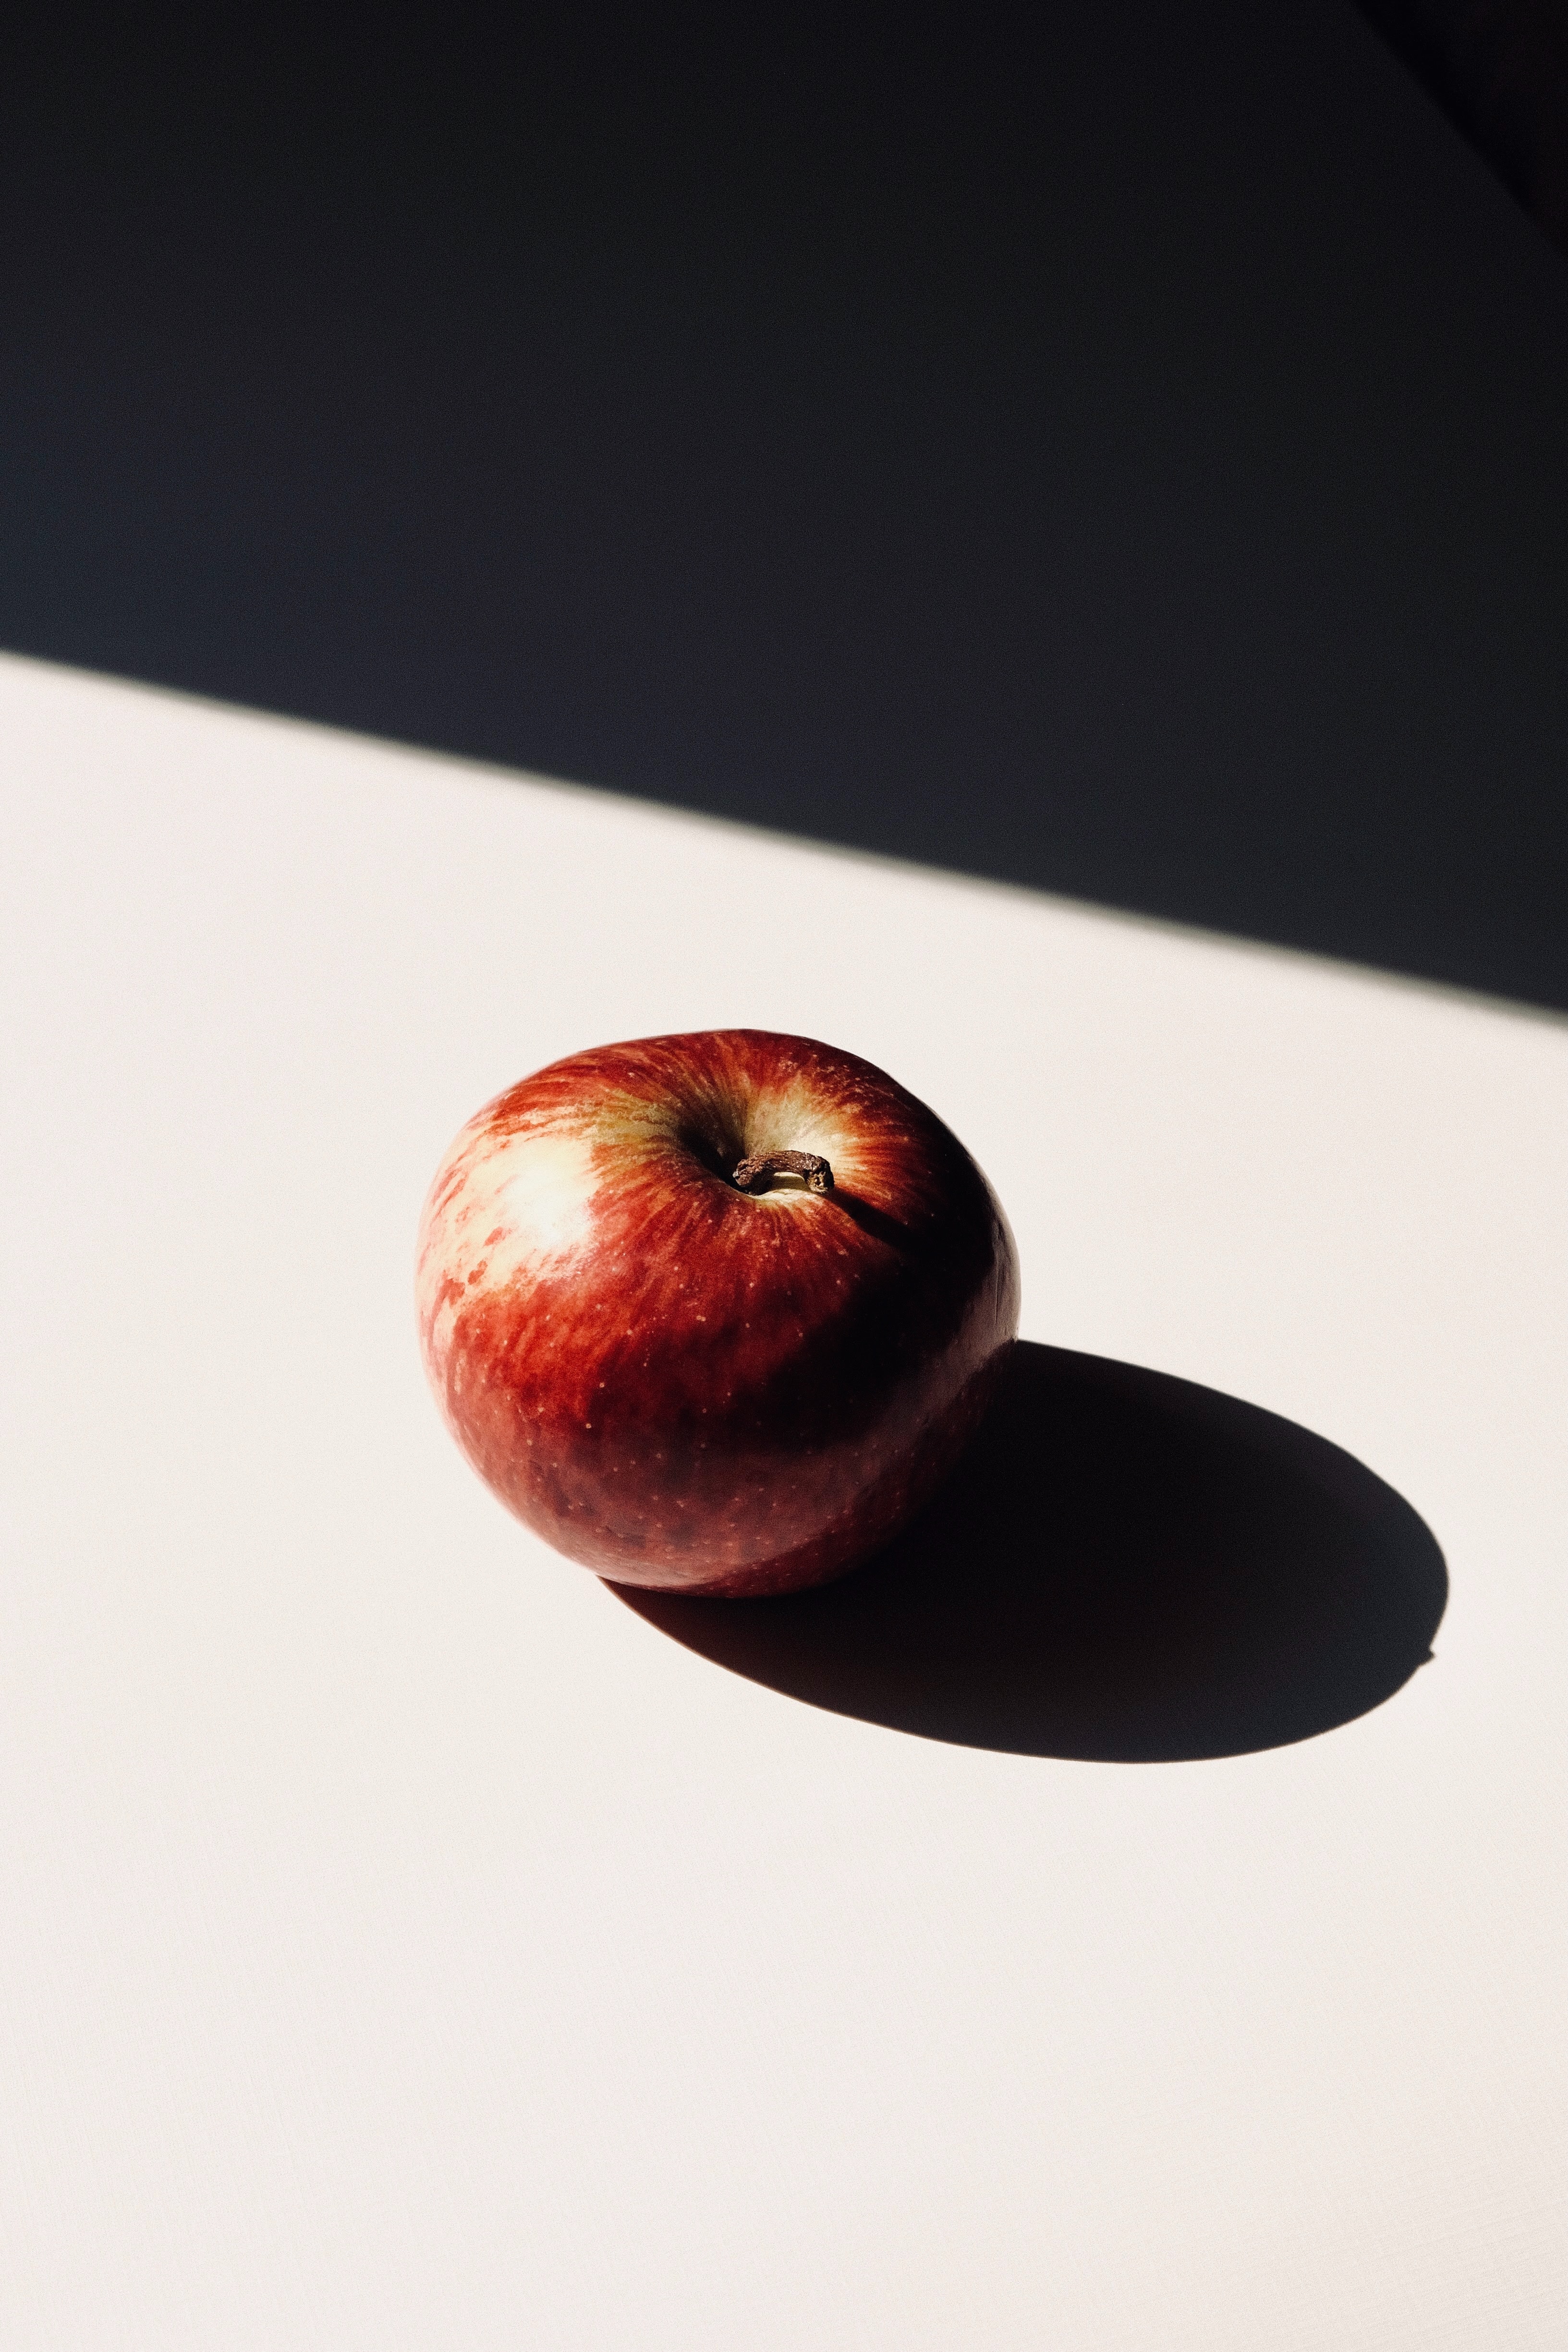 150723 descargar imagen comida, manzana, rojo, sombra, la fruta, fruta: fondos de pantalla y protectores de pantalla gratis